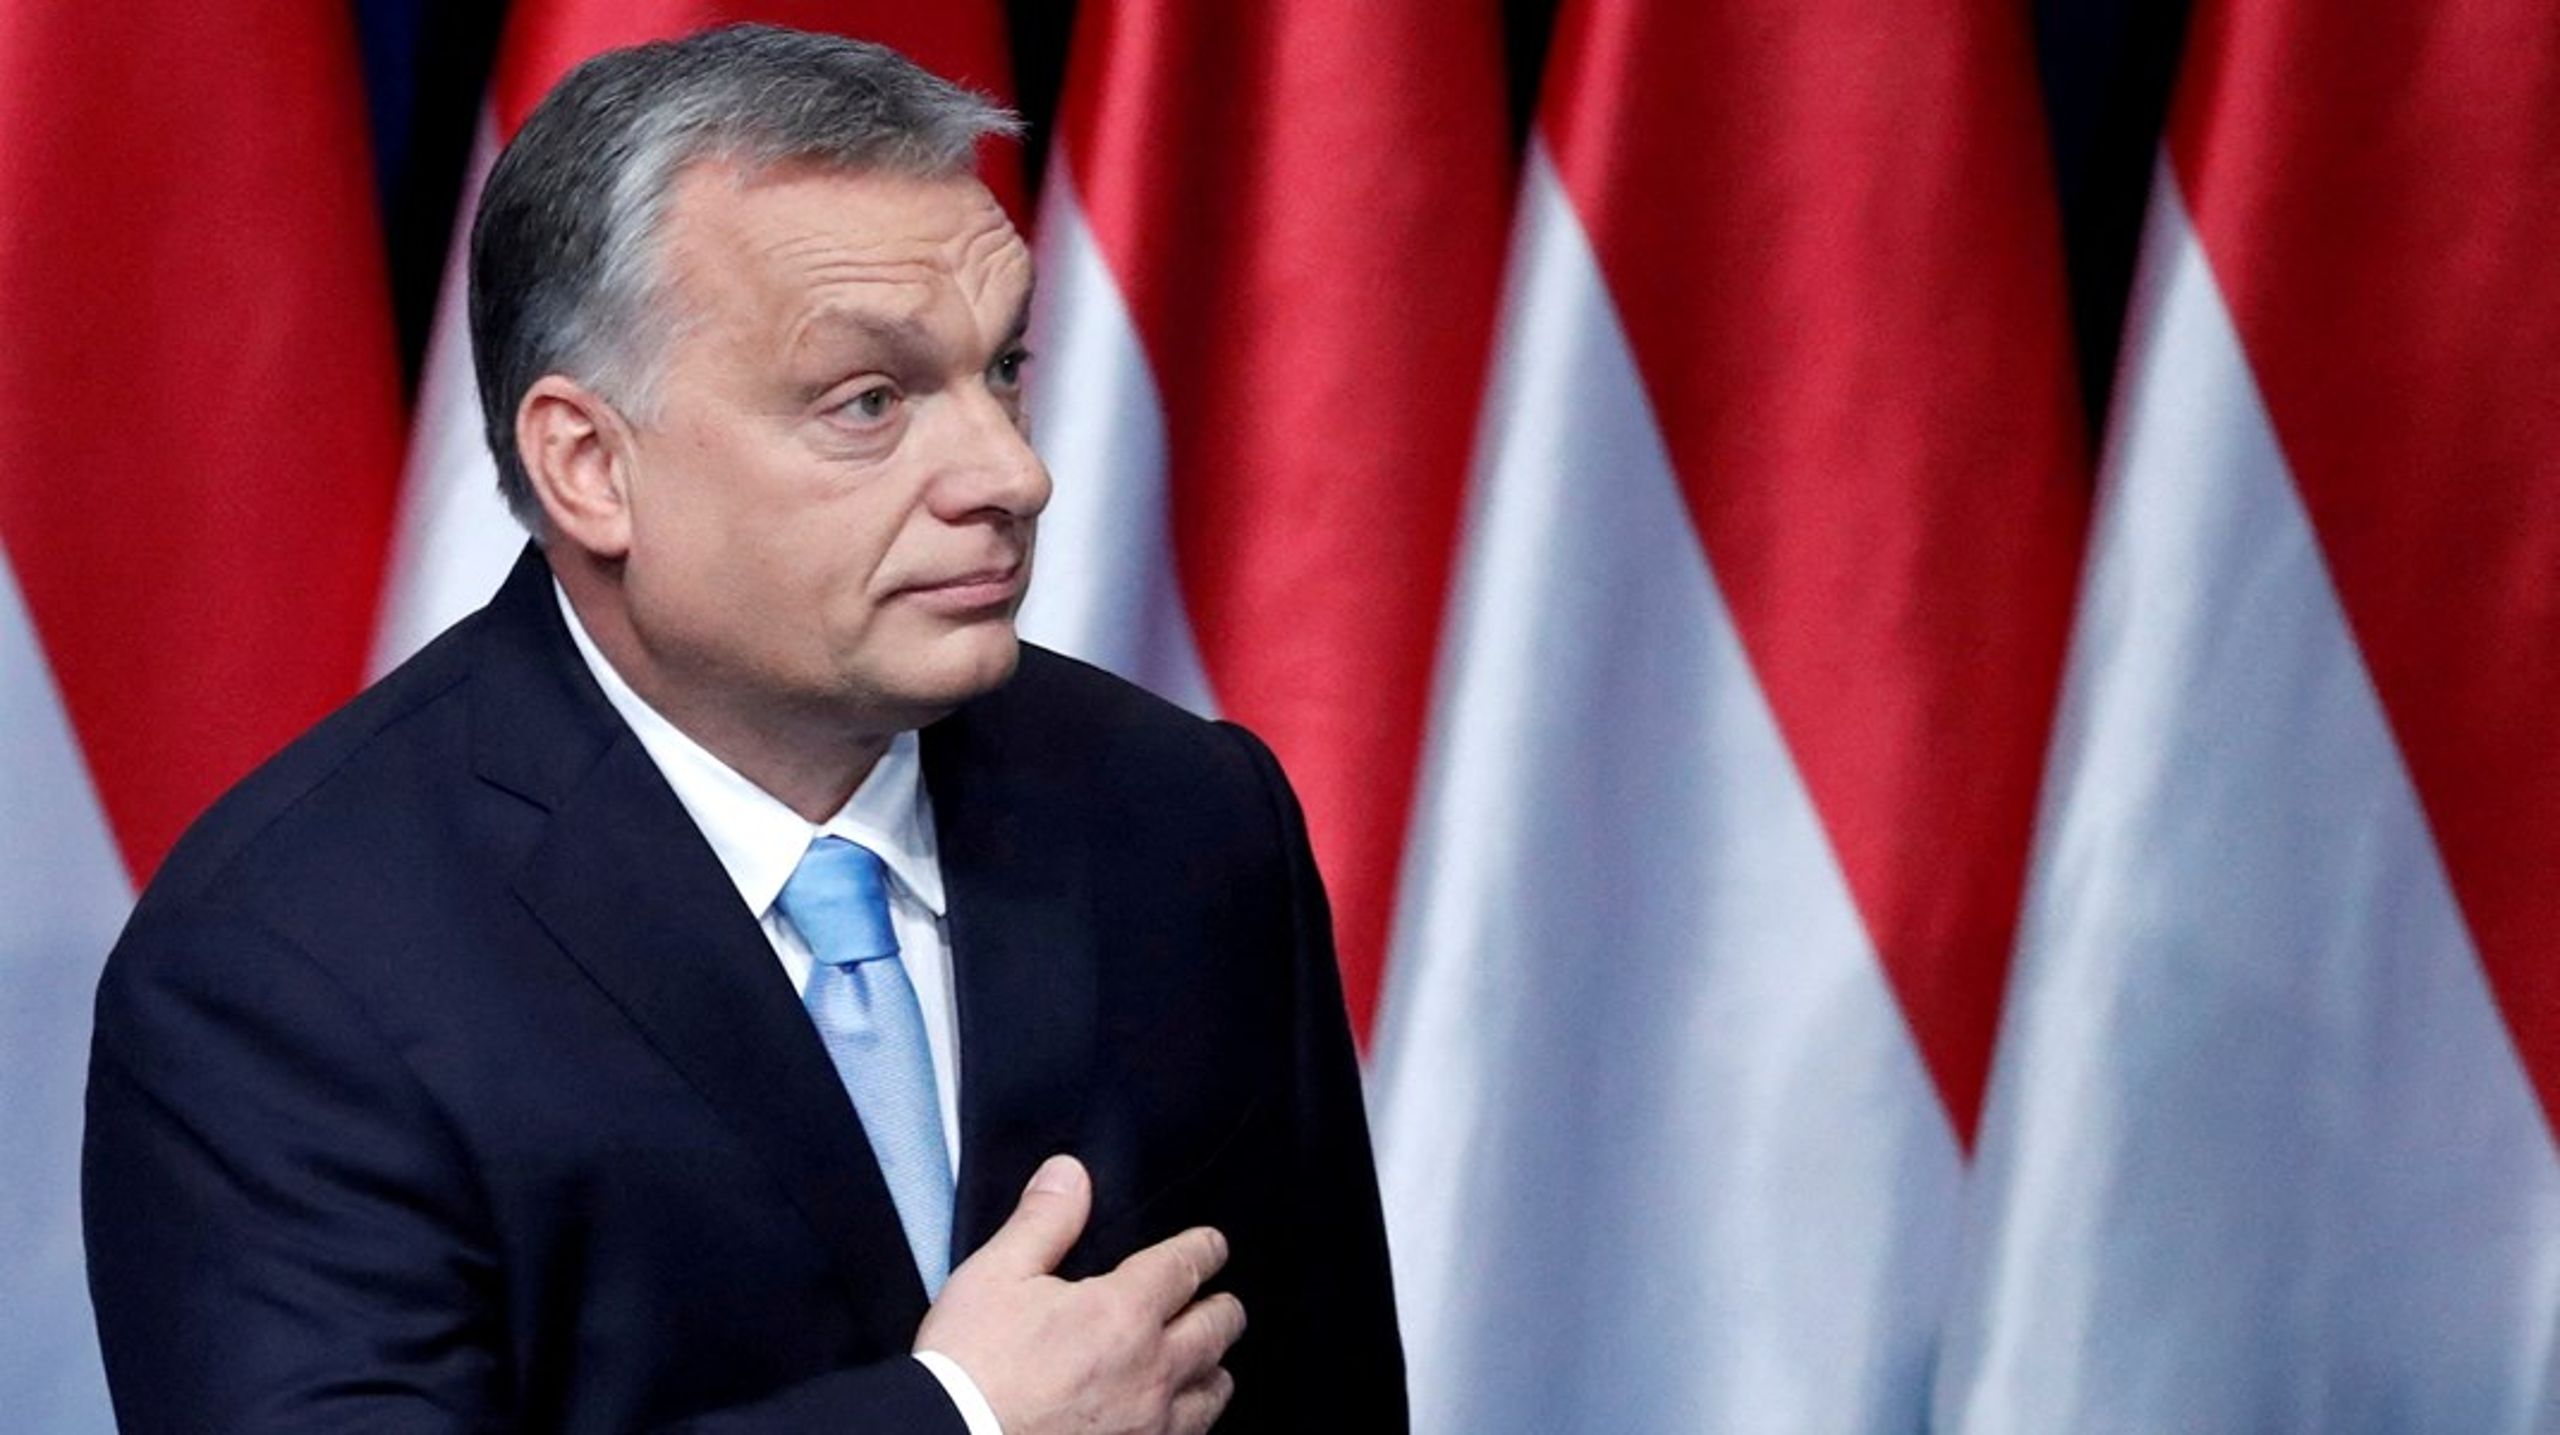 Seks ungarske partier, fra højre til venstre, har slået sig sammen med det ene formål at vippe Viktor Orbán af pinden søndag 3. april.